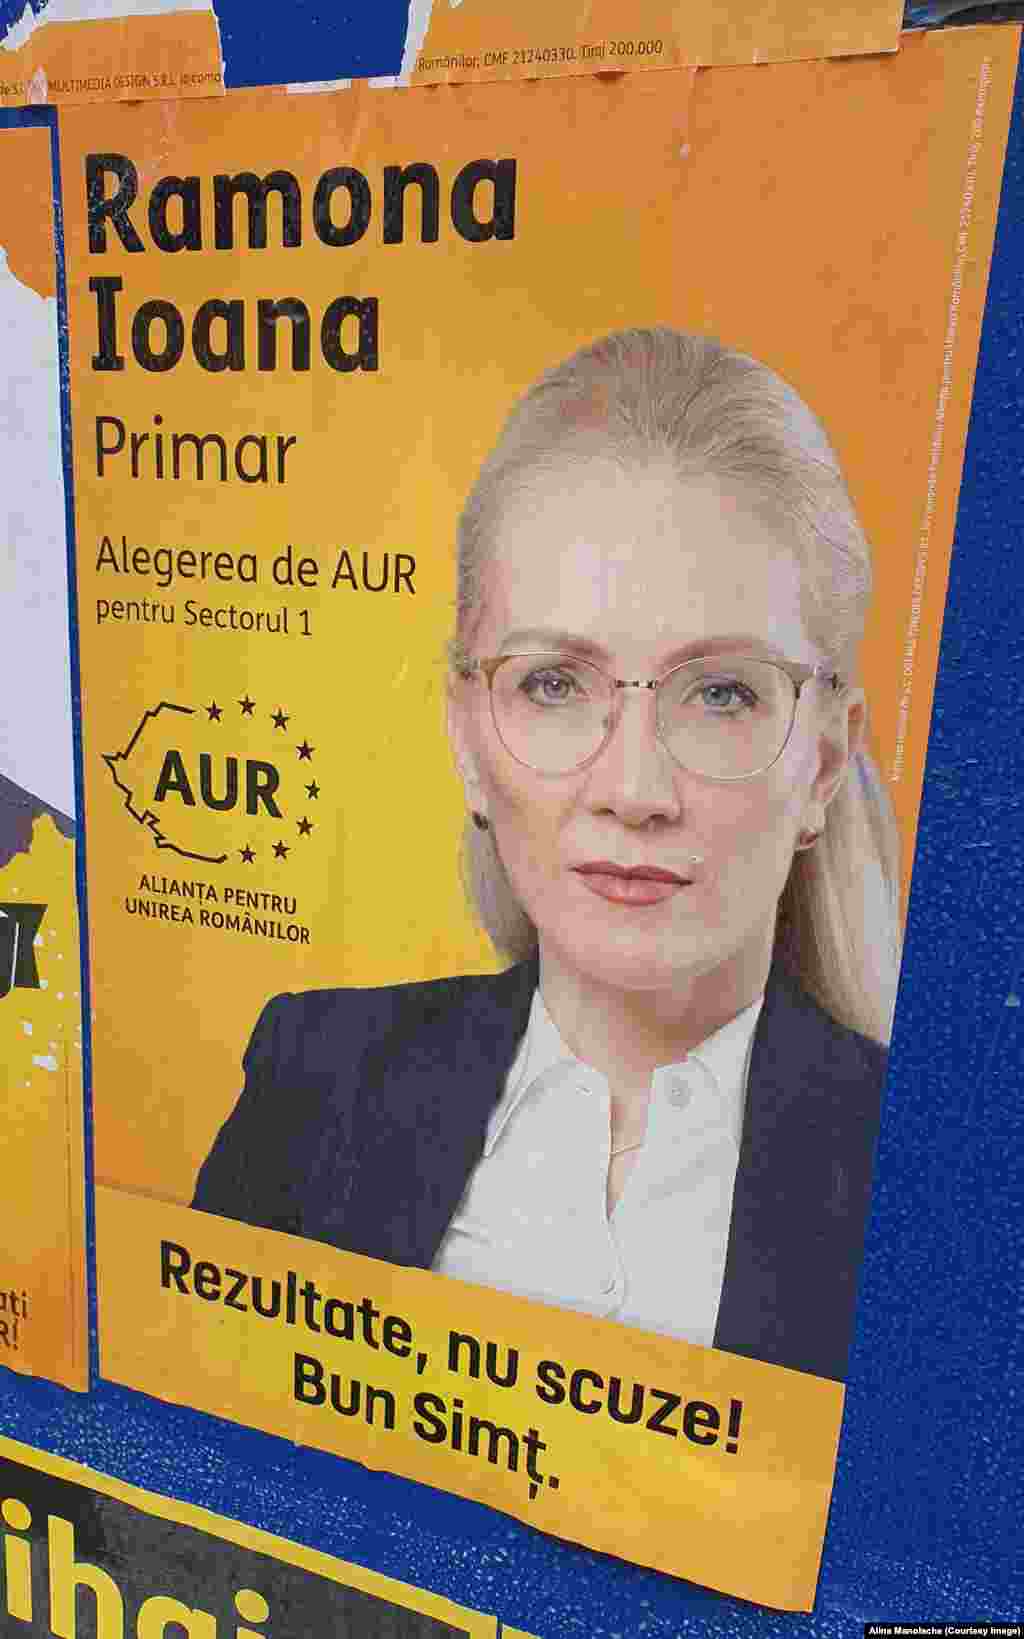 Ramona Bruynseels, candidat AUR la Primăria Sectorului 1, nu și-a pus numele de famlie pe afișul electoral, ci numai cele două prenume Ramona-Ioana. Promite &bdquo;rezultate, nu scuze&rdquo; și &bdquo;bun-simț&rdquo;.&nbsp;